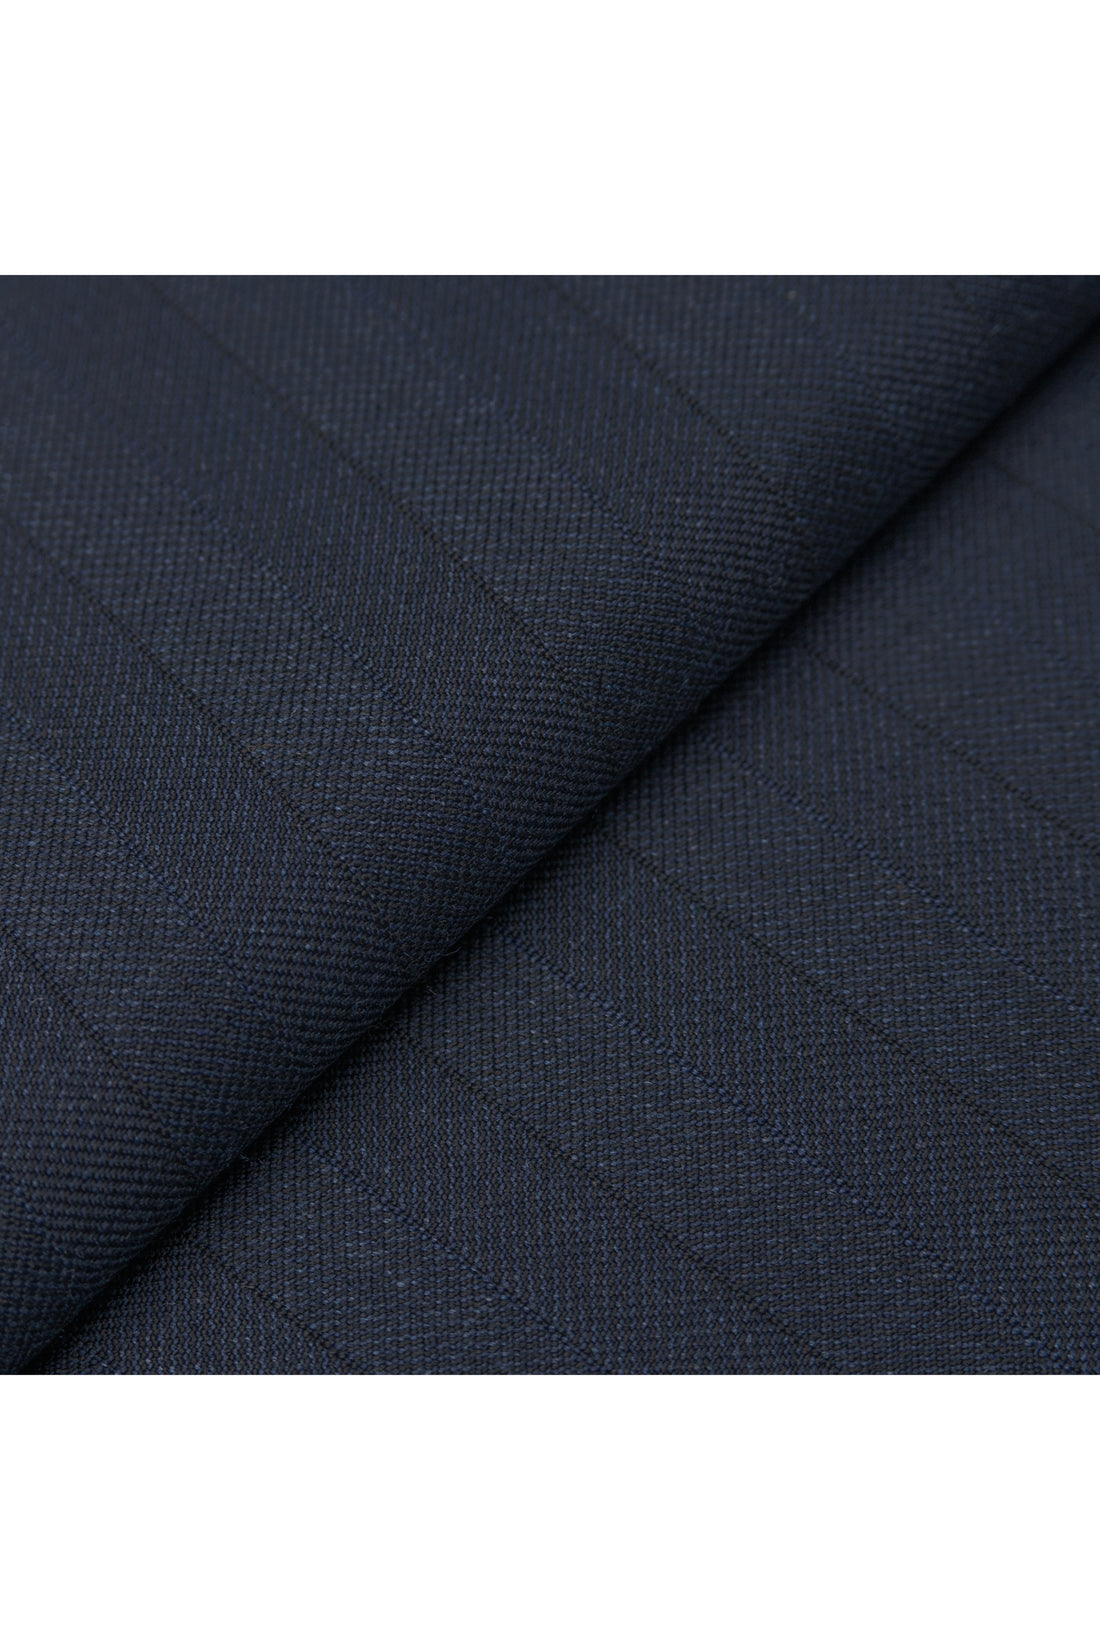 Navy Pure Wool Herringbone Suit